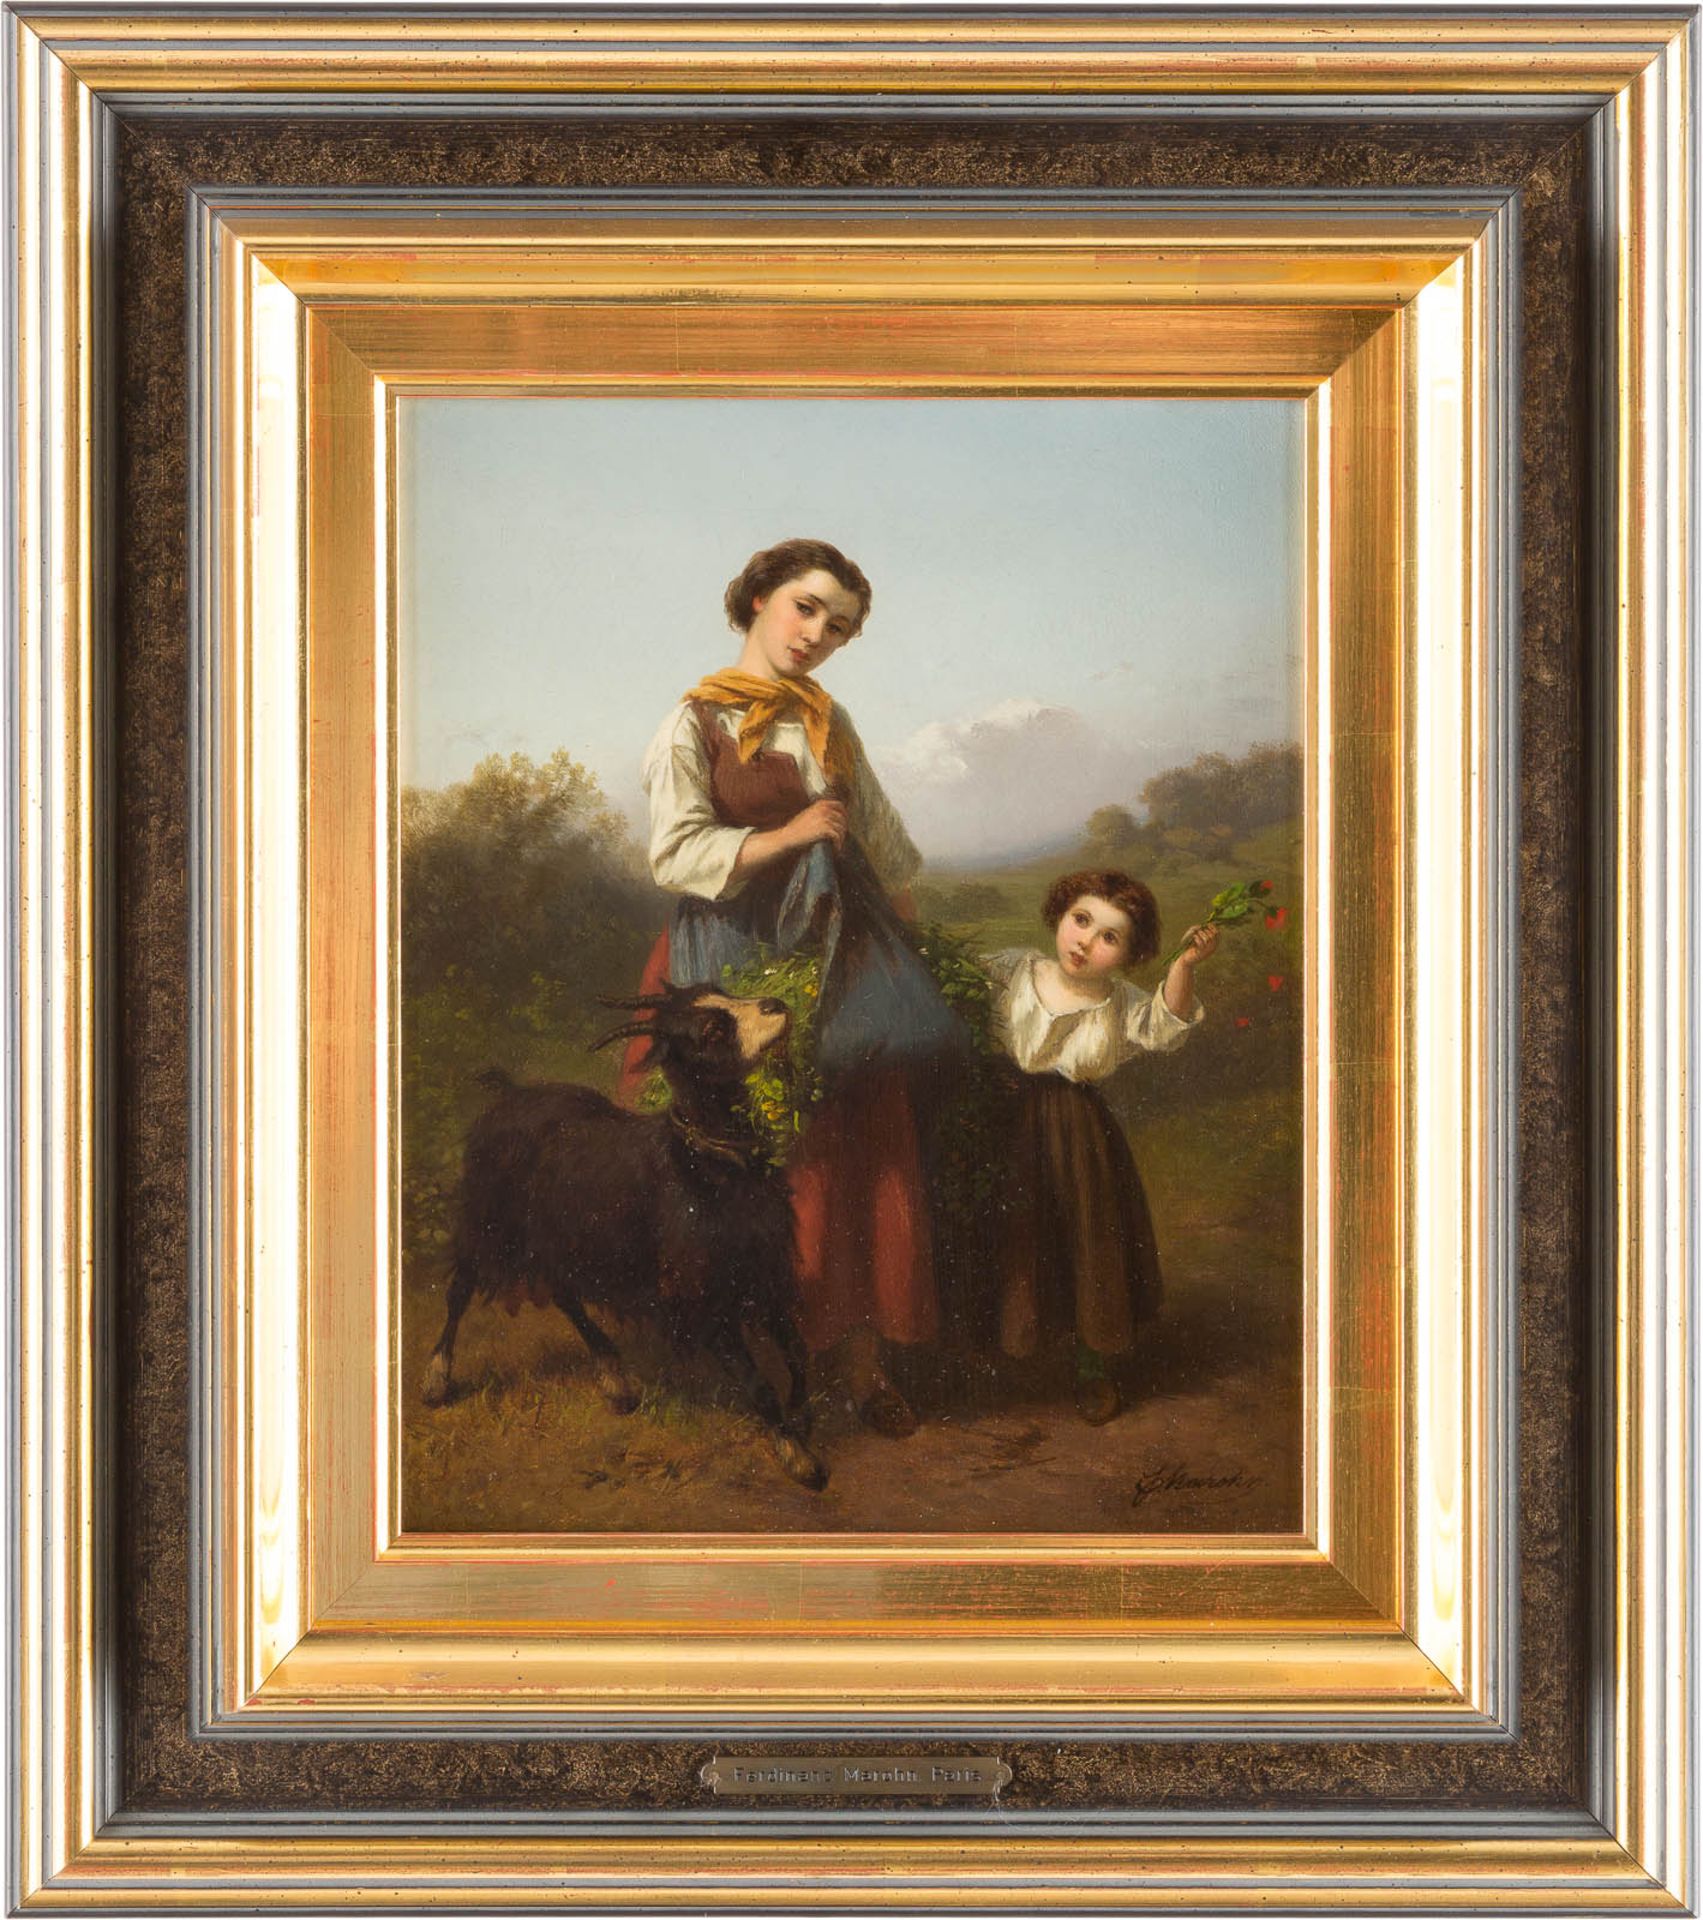 FERDINAND MAROHNTätig c.1839 - c.1865Junge Hirtin mit Kind Öl auf Leinwand (doubl.). 27,5 x 22 cm ( - Bild 2 aus 2